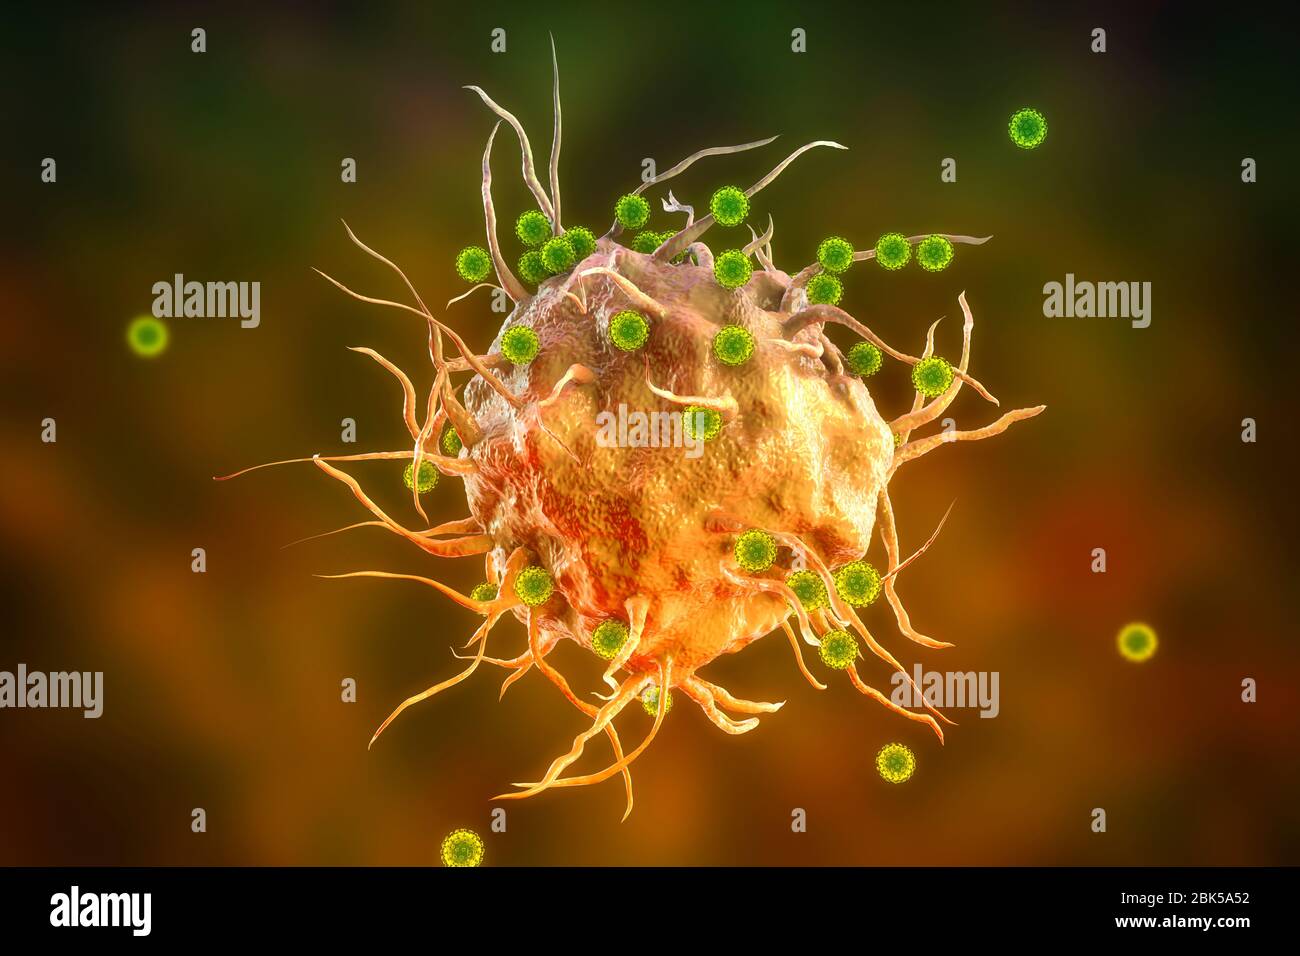 Virus SARS-cov-2 e cellule immunitarie. Immagine concettuale che illustra l'immunità antivirale e la vaccinazione. Foto Stock